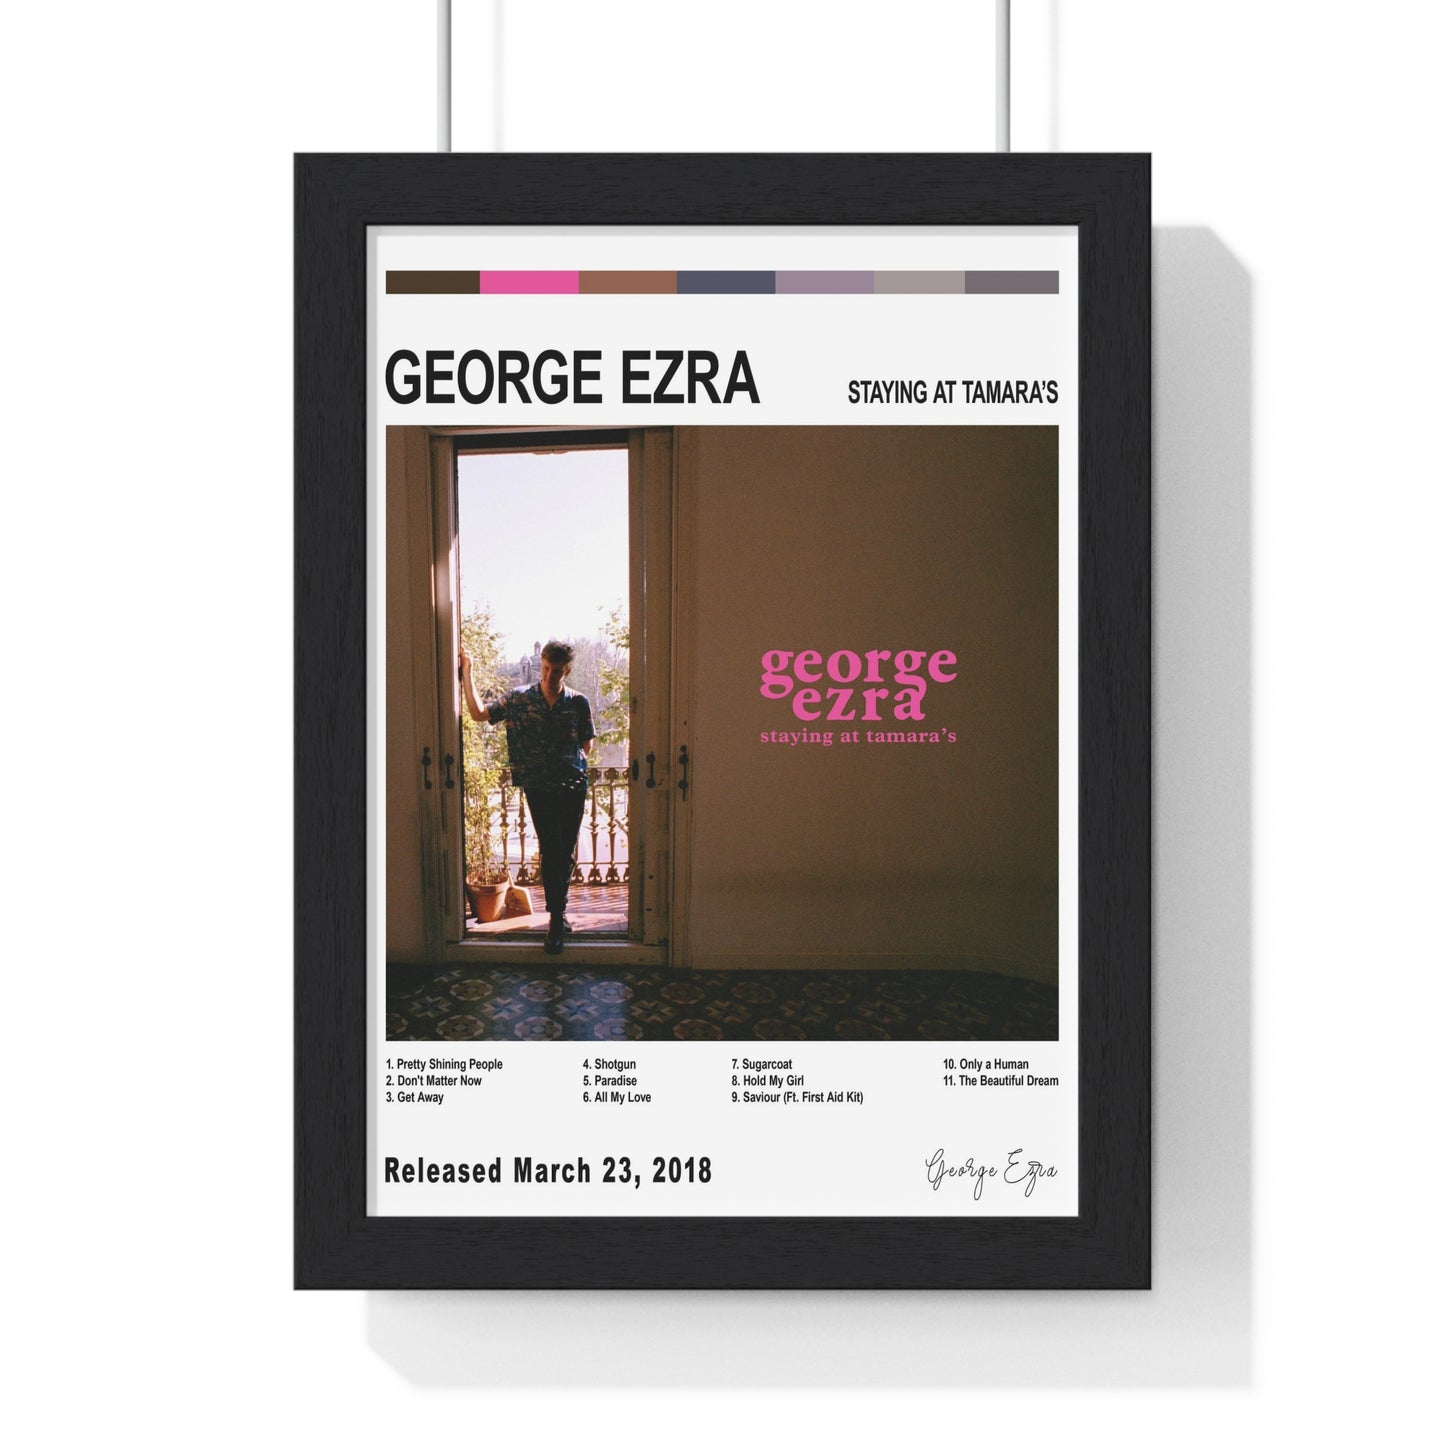 George Ezra - Staying at Tamara’s Album Cover Poster